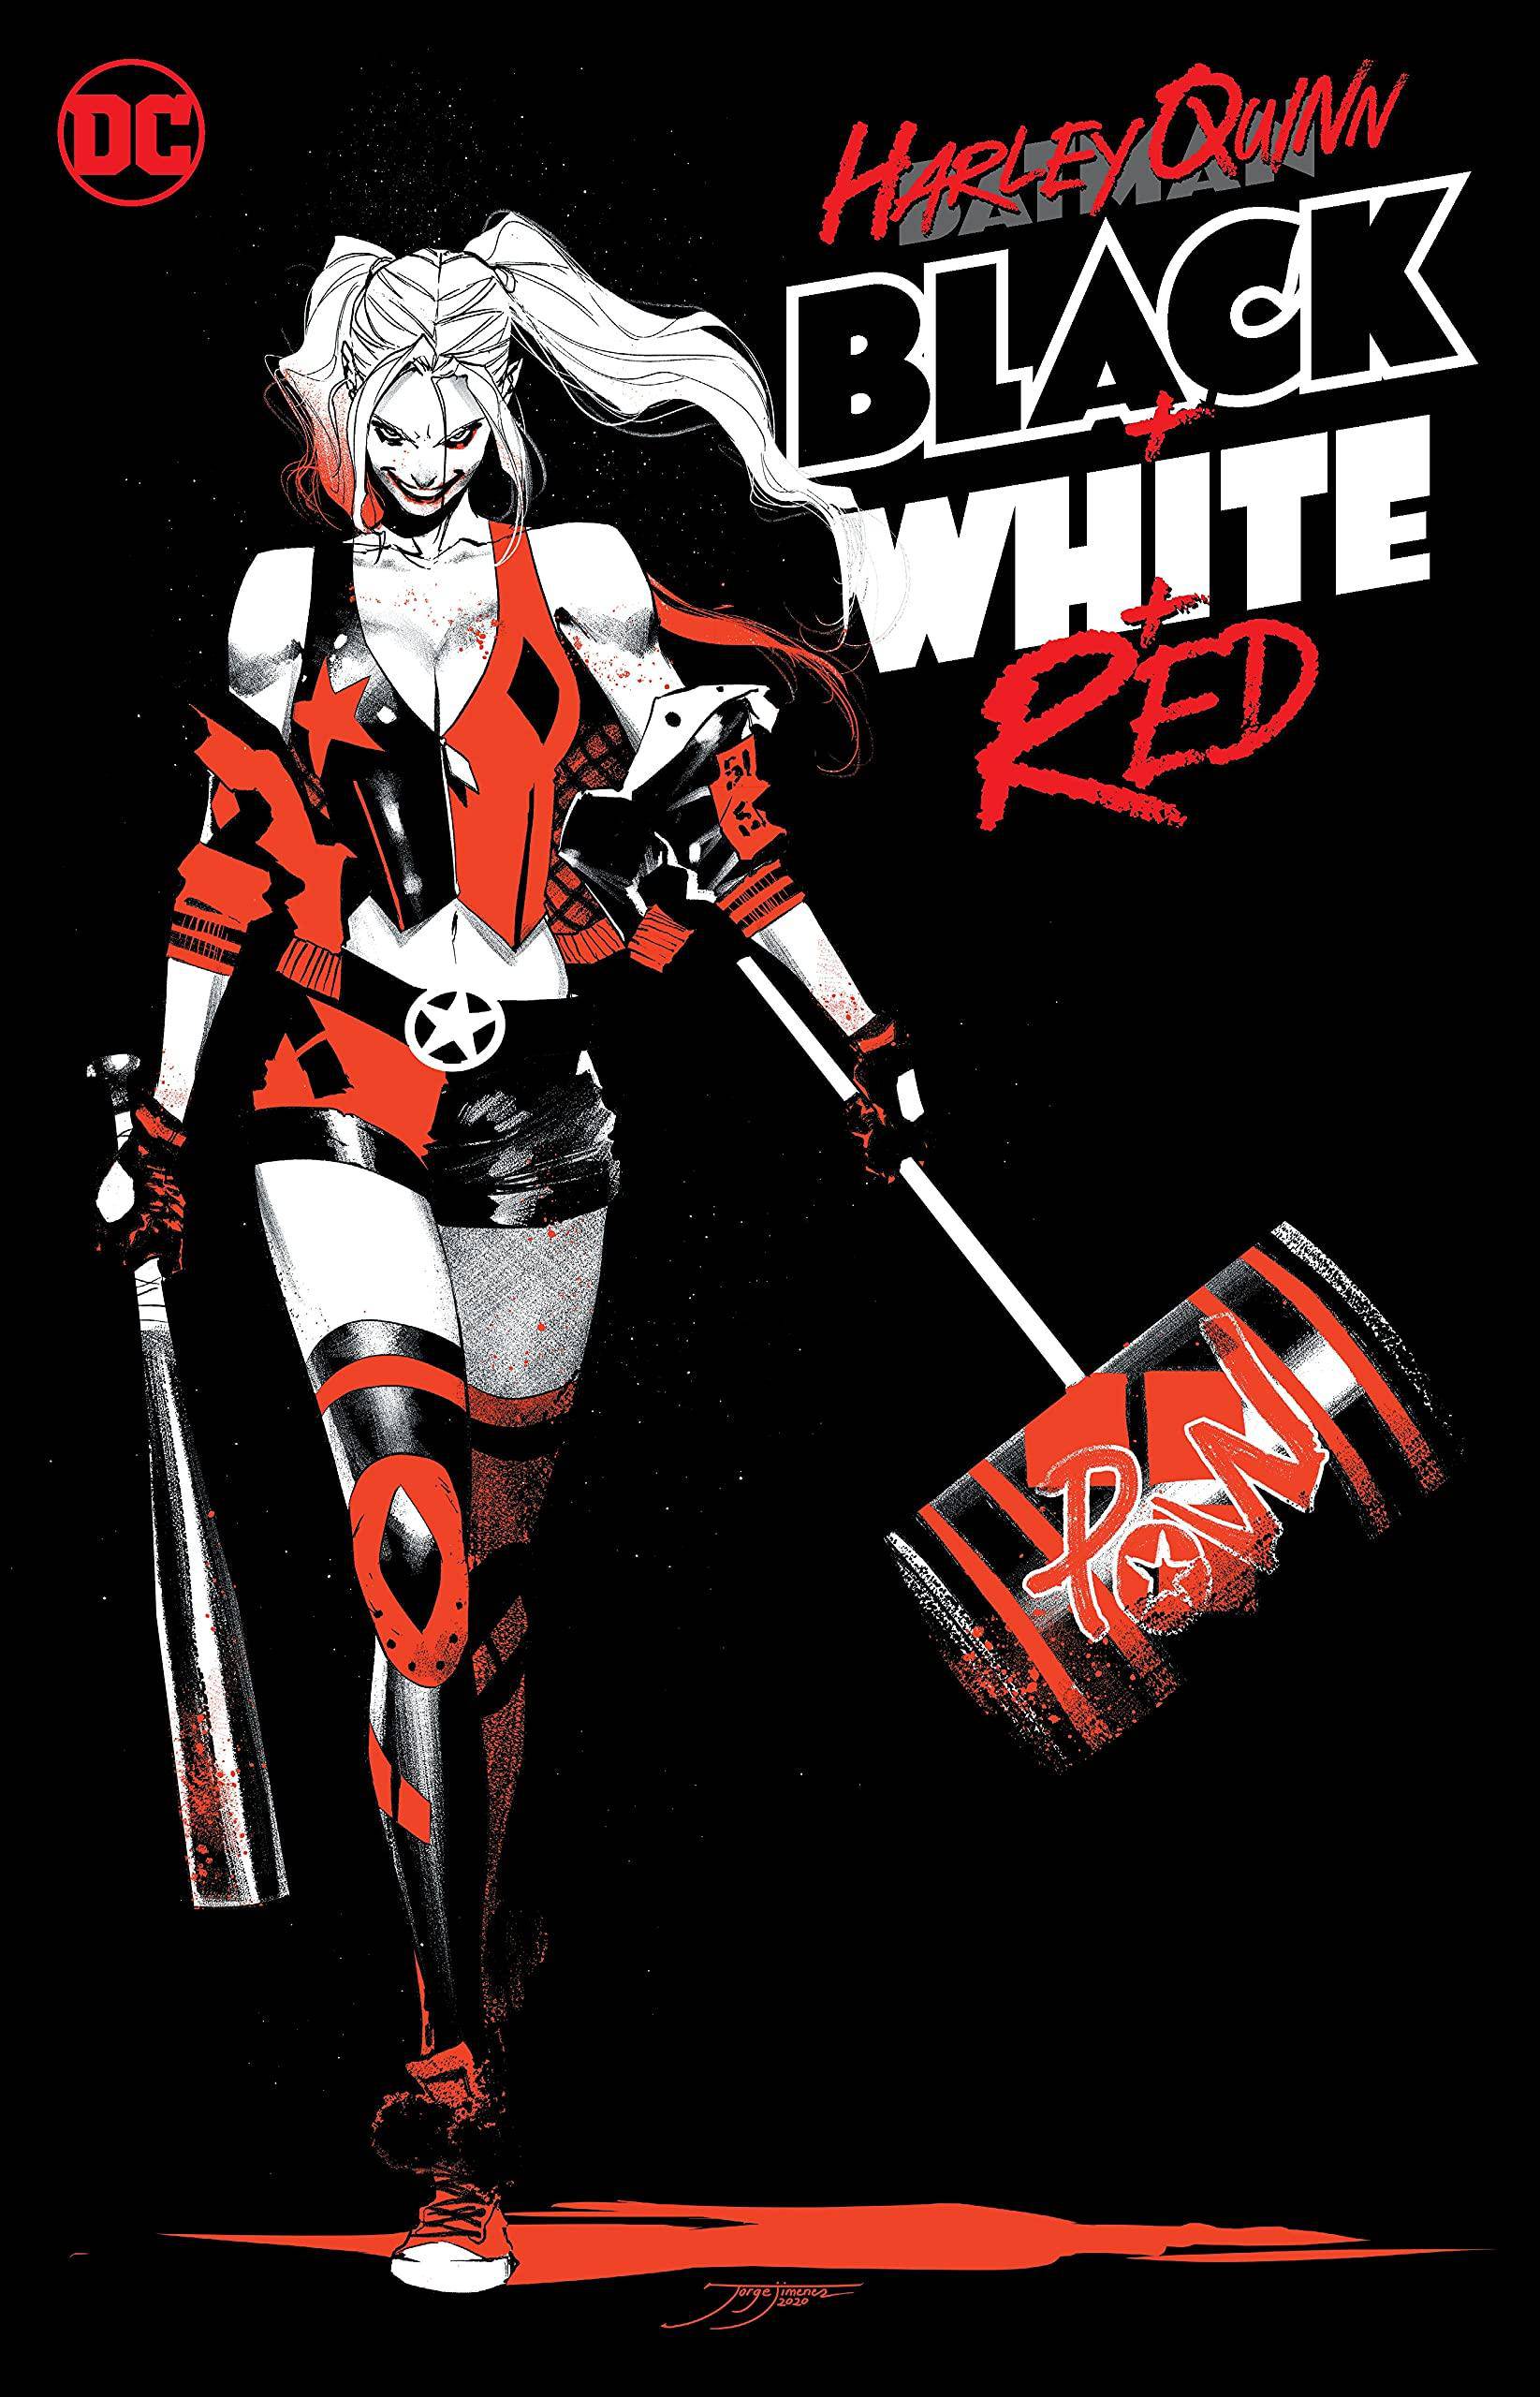 Harley Quinn Black + White + Red - SureShot Books Publishing LLC